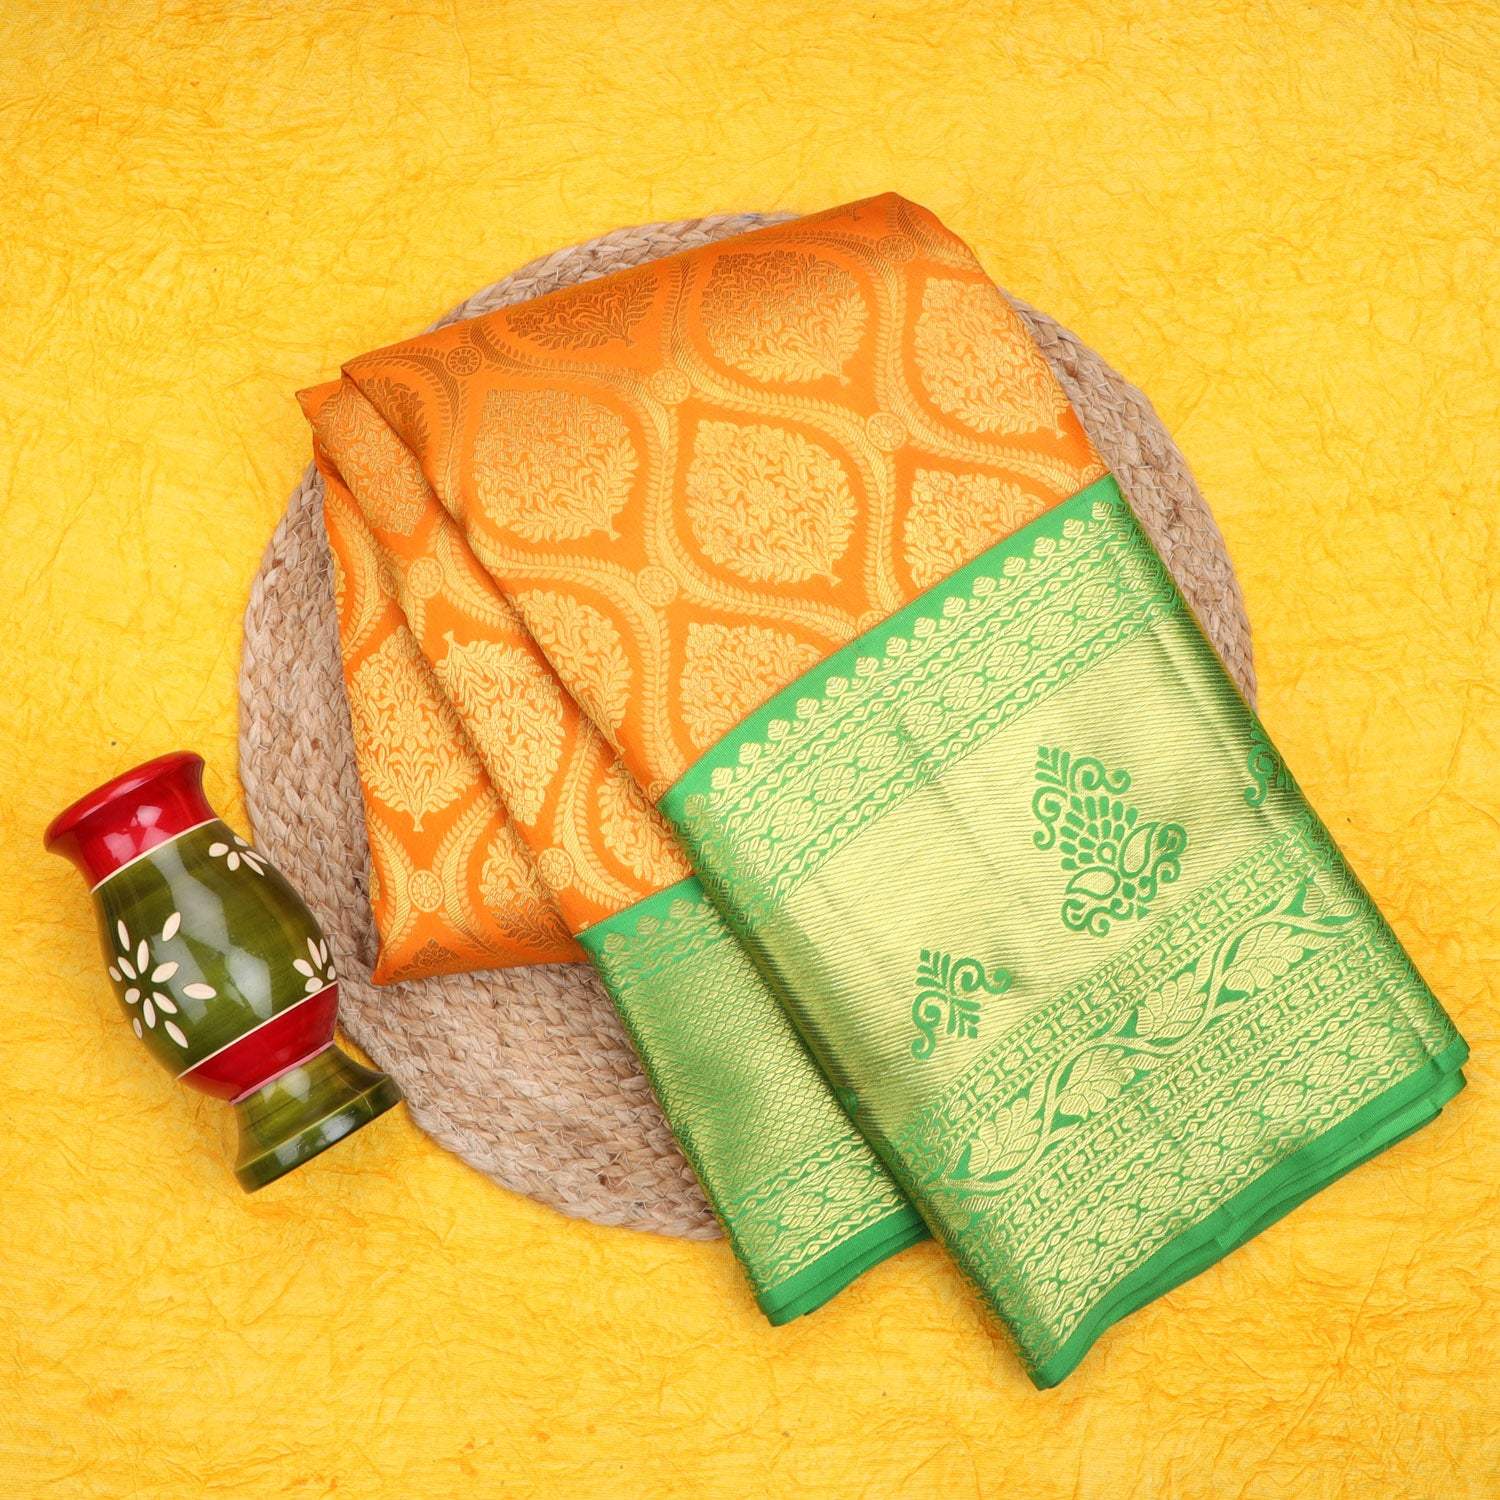 Orange Kanjivaram Silk Saree With Floral Motif Pattern - Singhania's